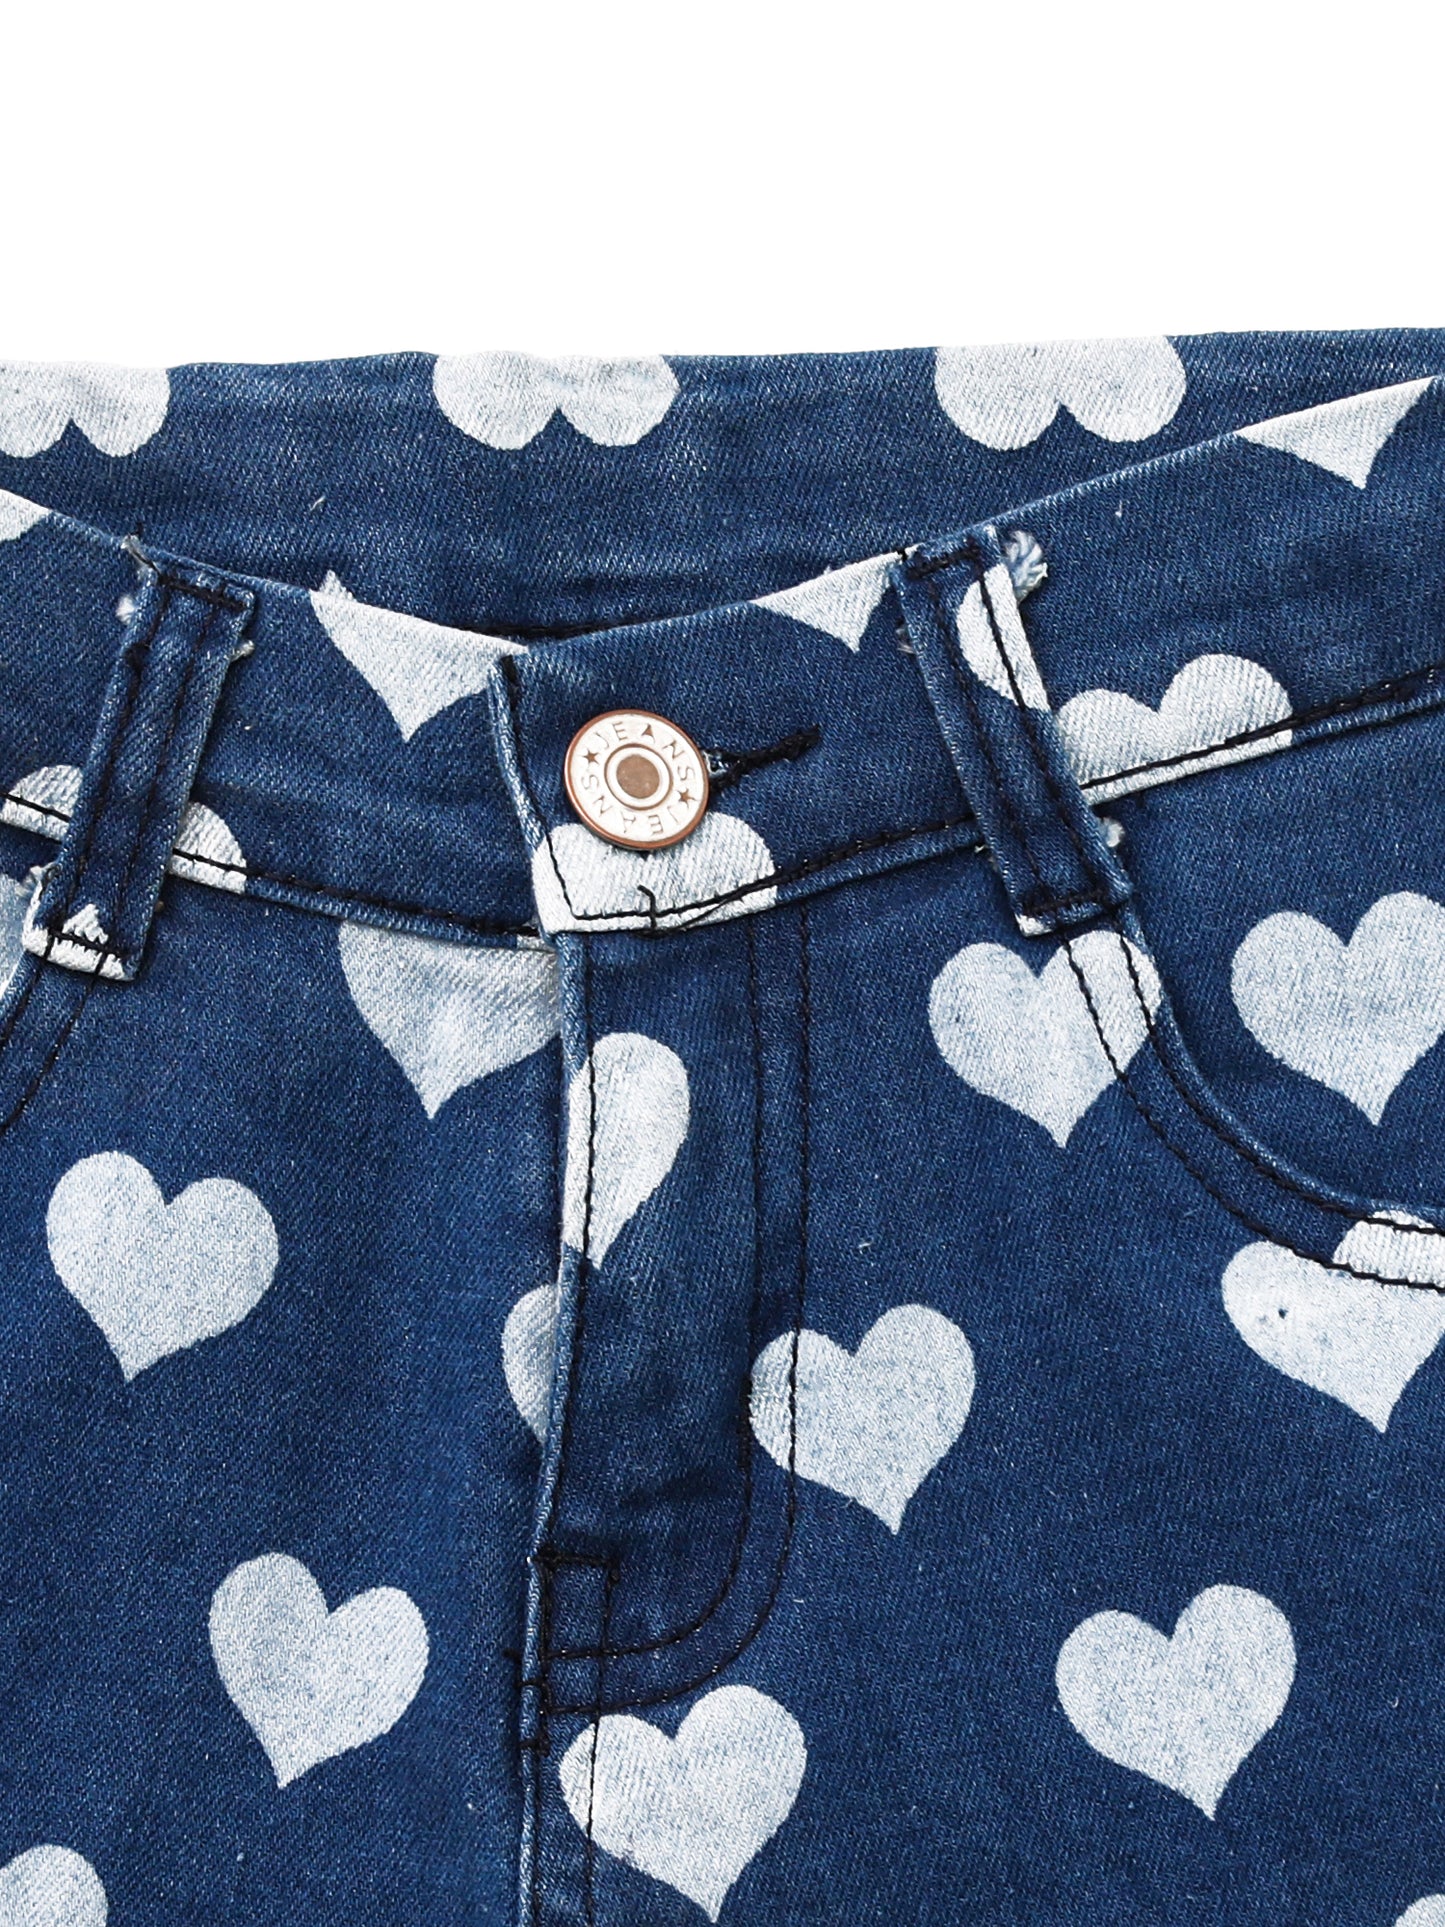 Kids Heart Printed Denim Skirt